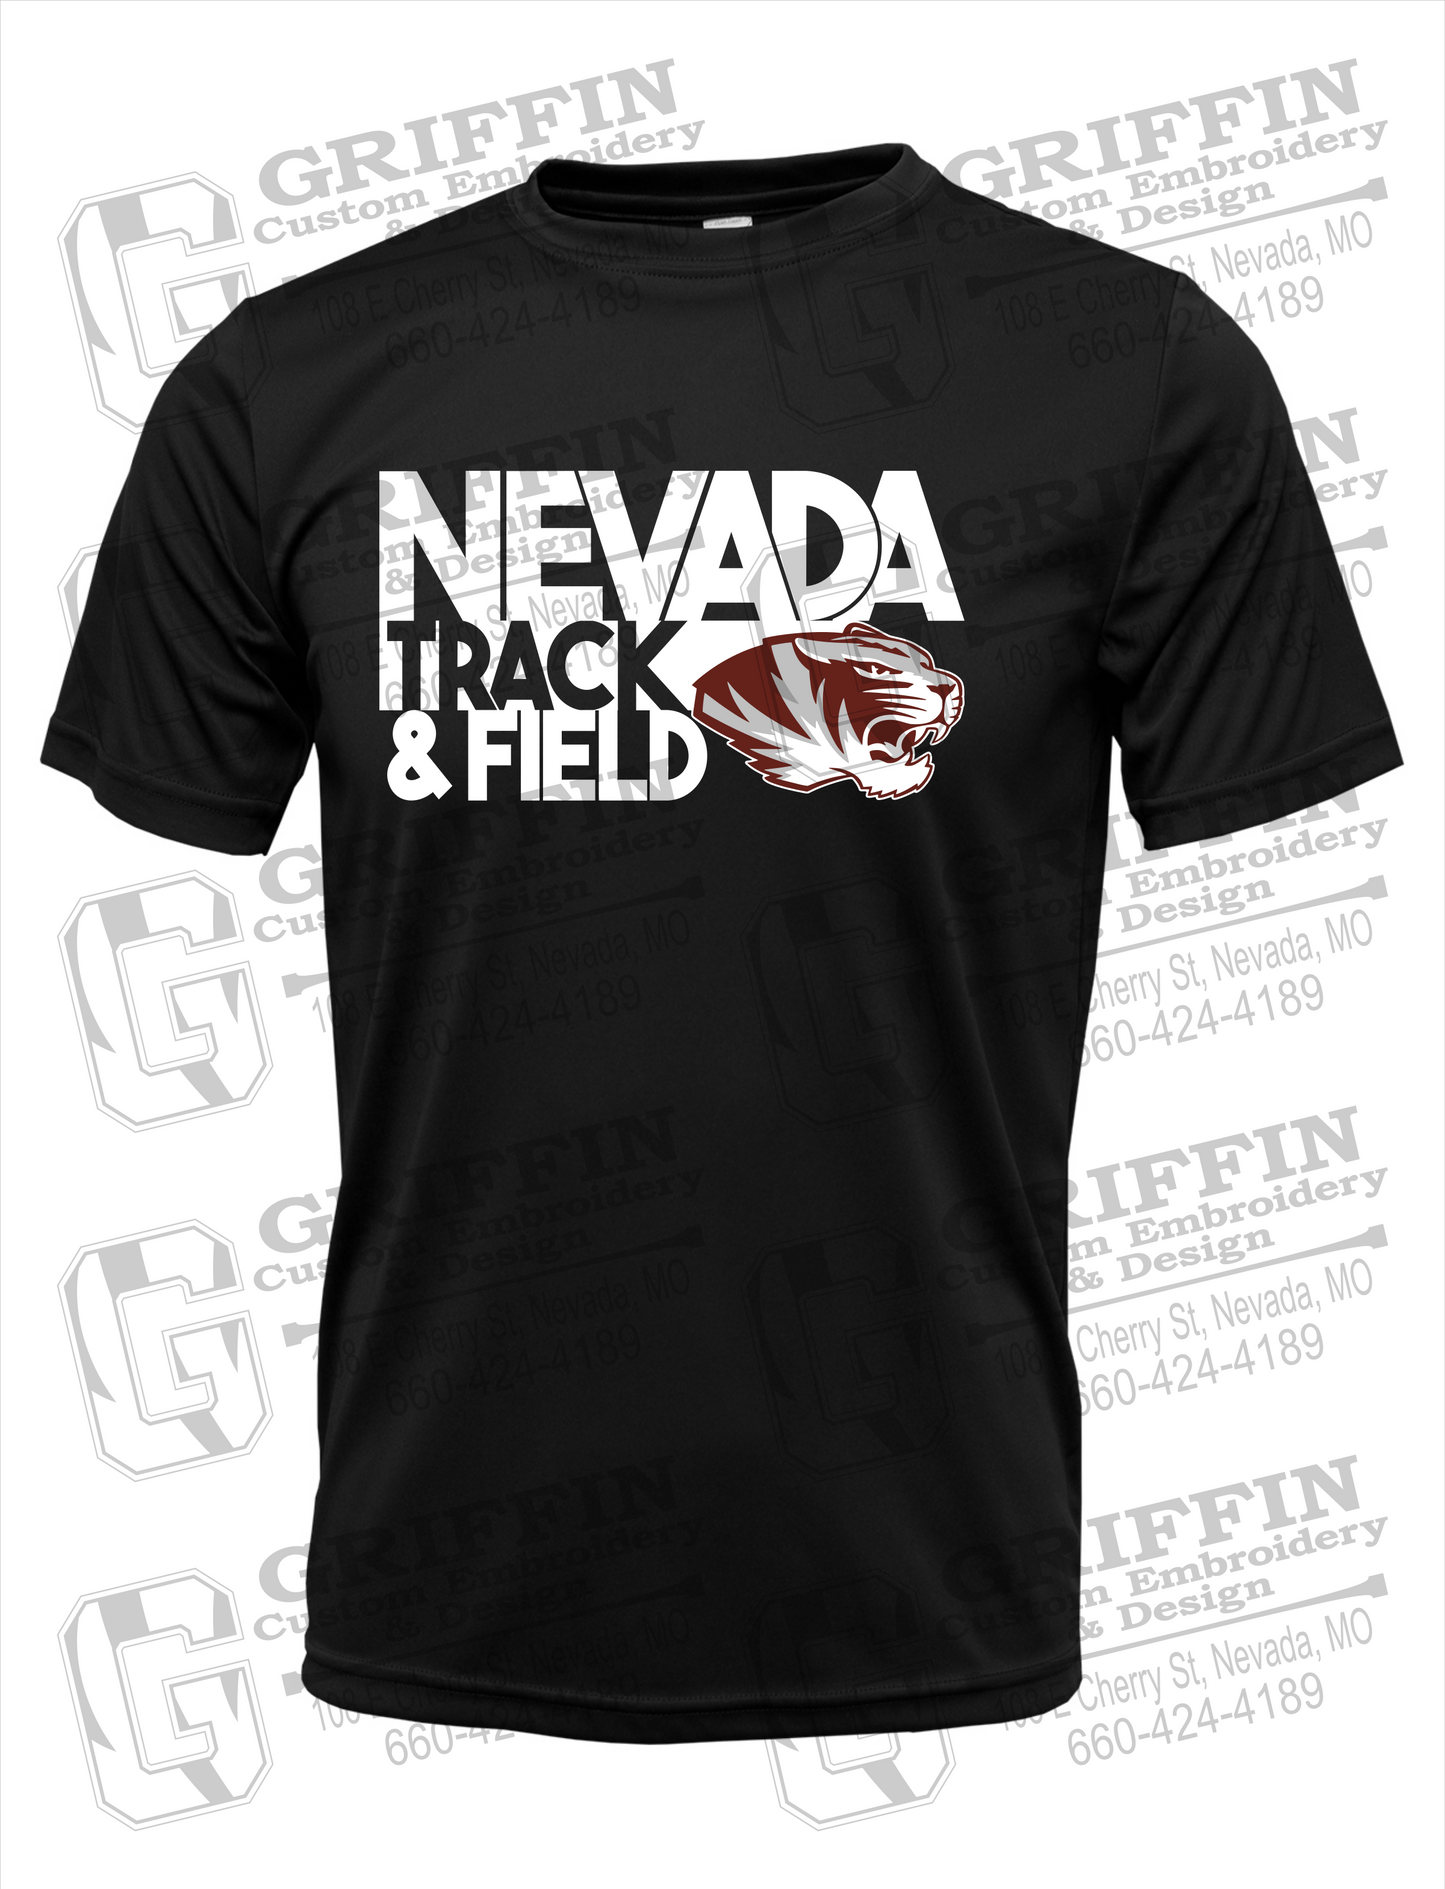 Nevada Tigers 24-Q Dry-Fit T-Shirt - Track & Field